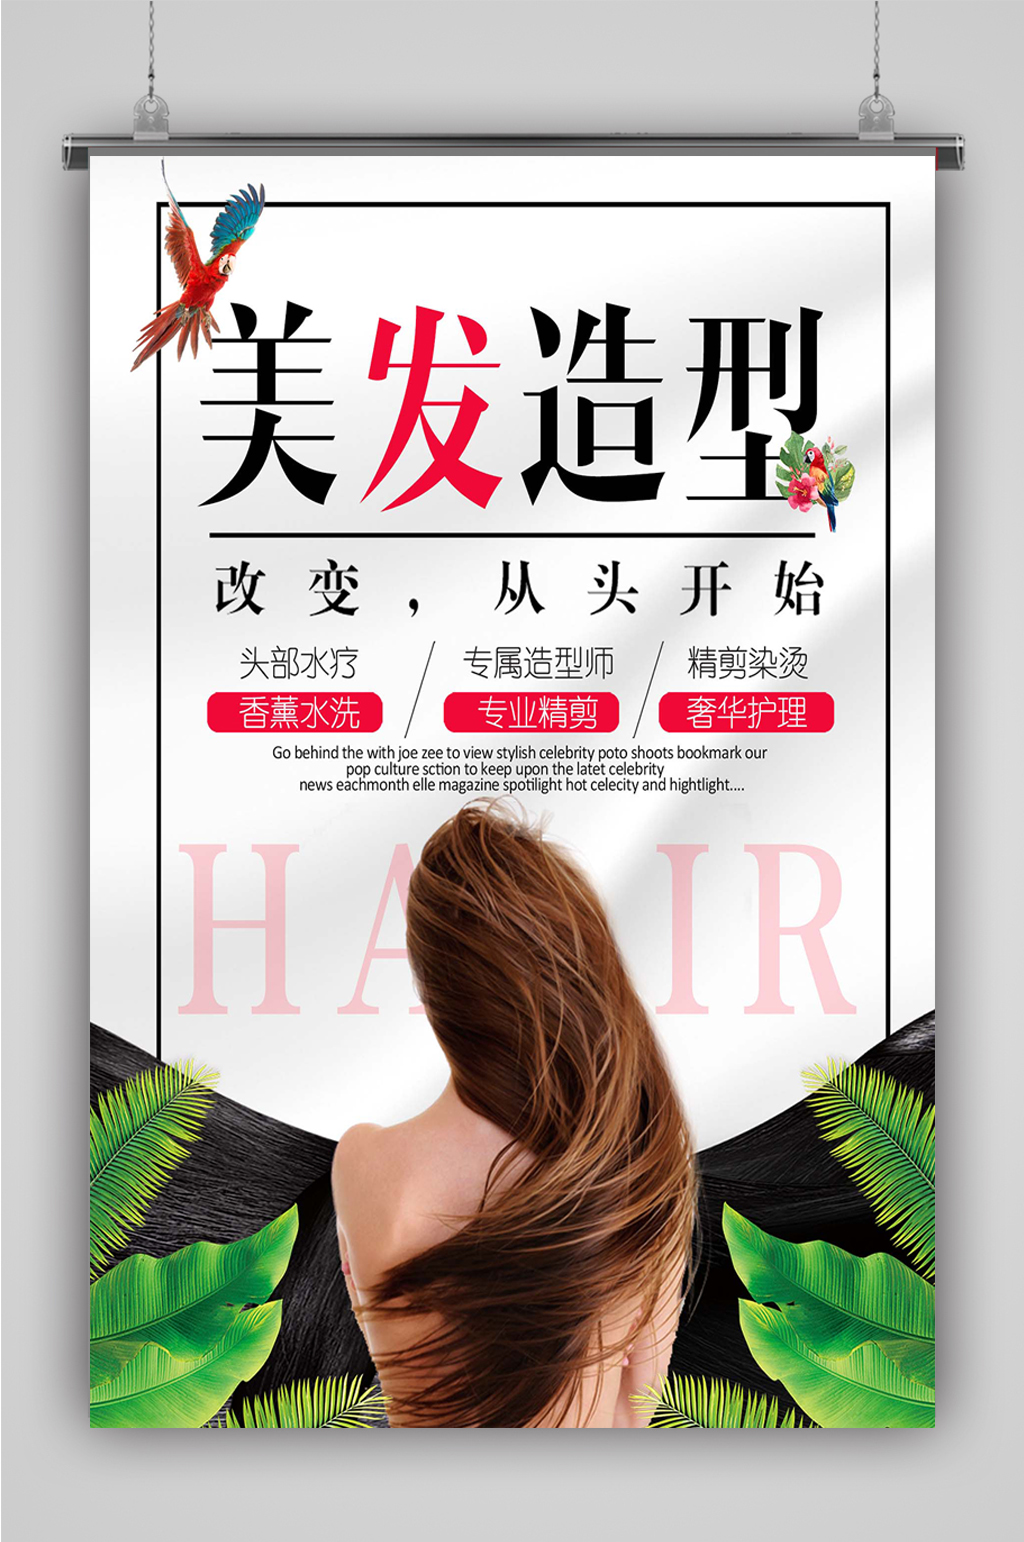 美容美发海报素材免费下载,本作品是由小昵上传的原创平面广告素材